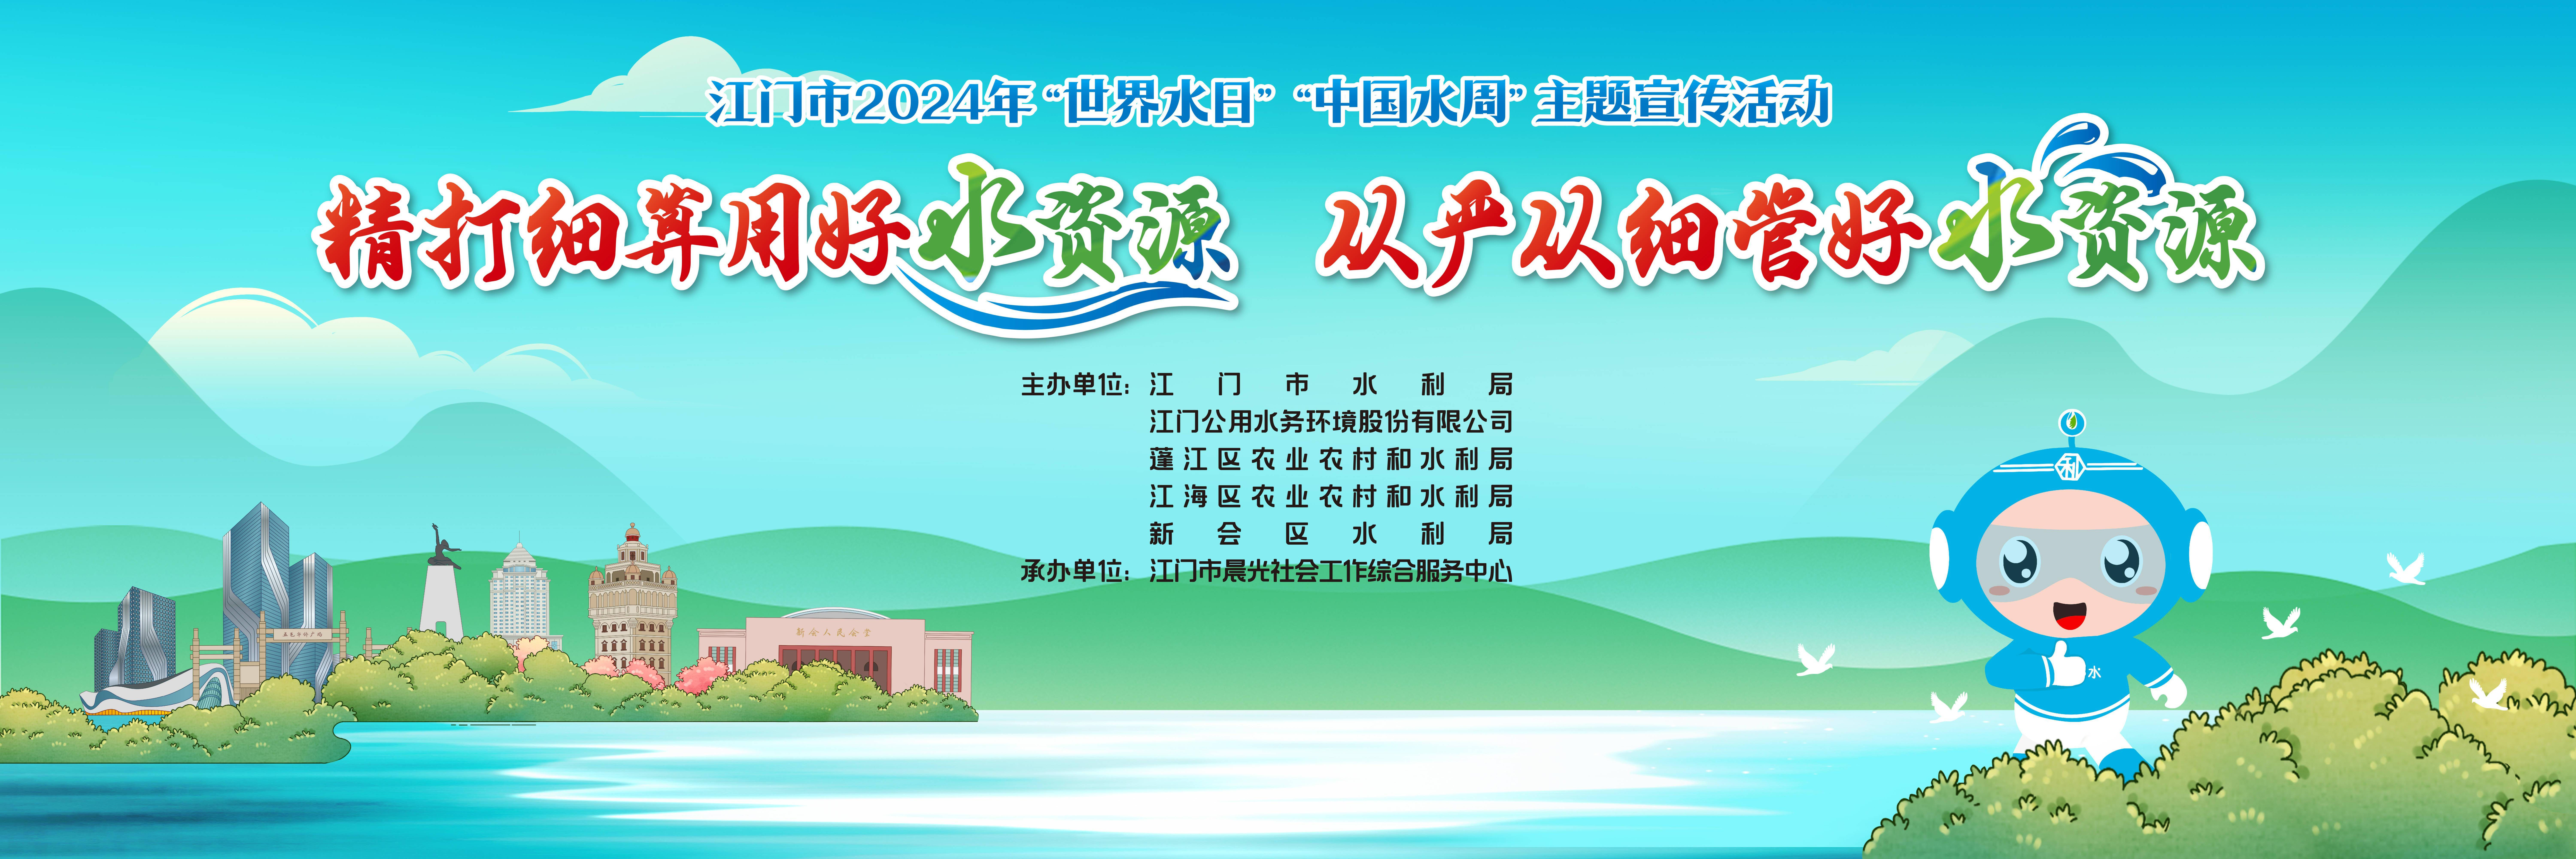 精彩纷呈!江门启动世界水日中国水周宣传活动